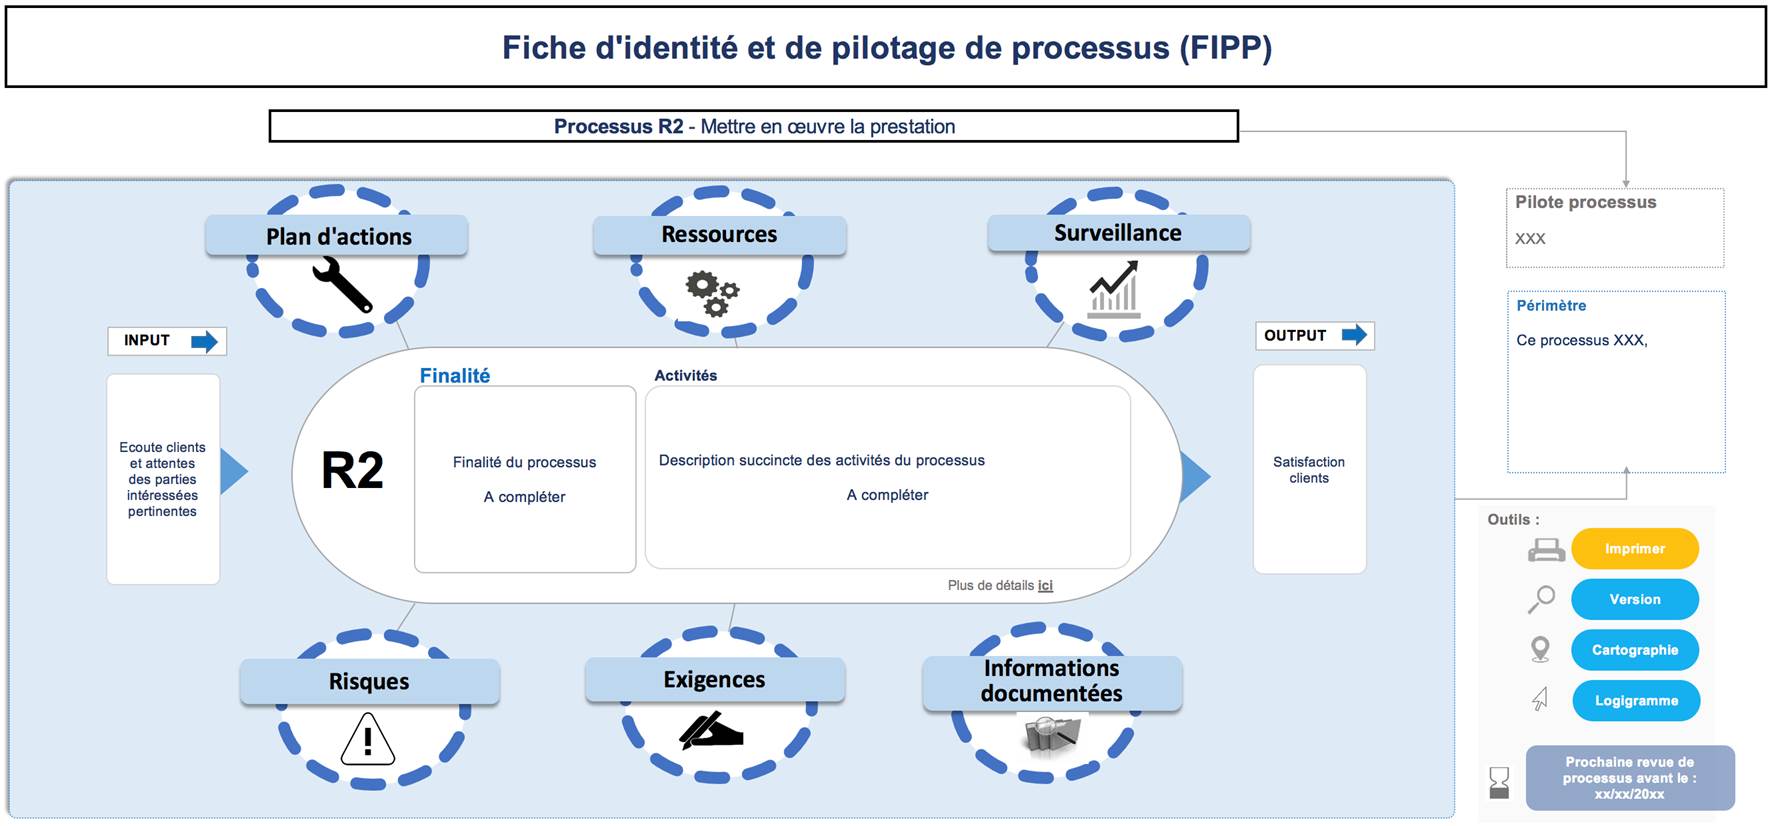 Figure 1.2 FIPP modèle (processus R2)